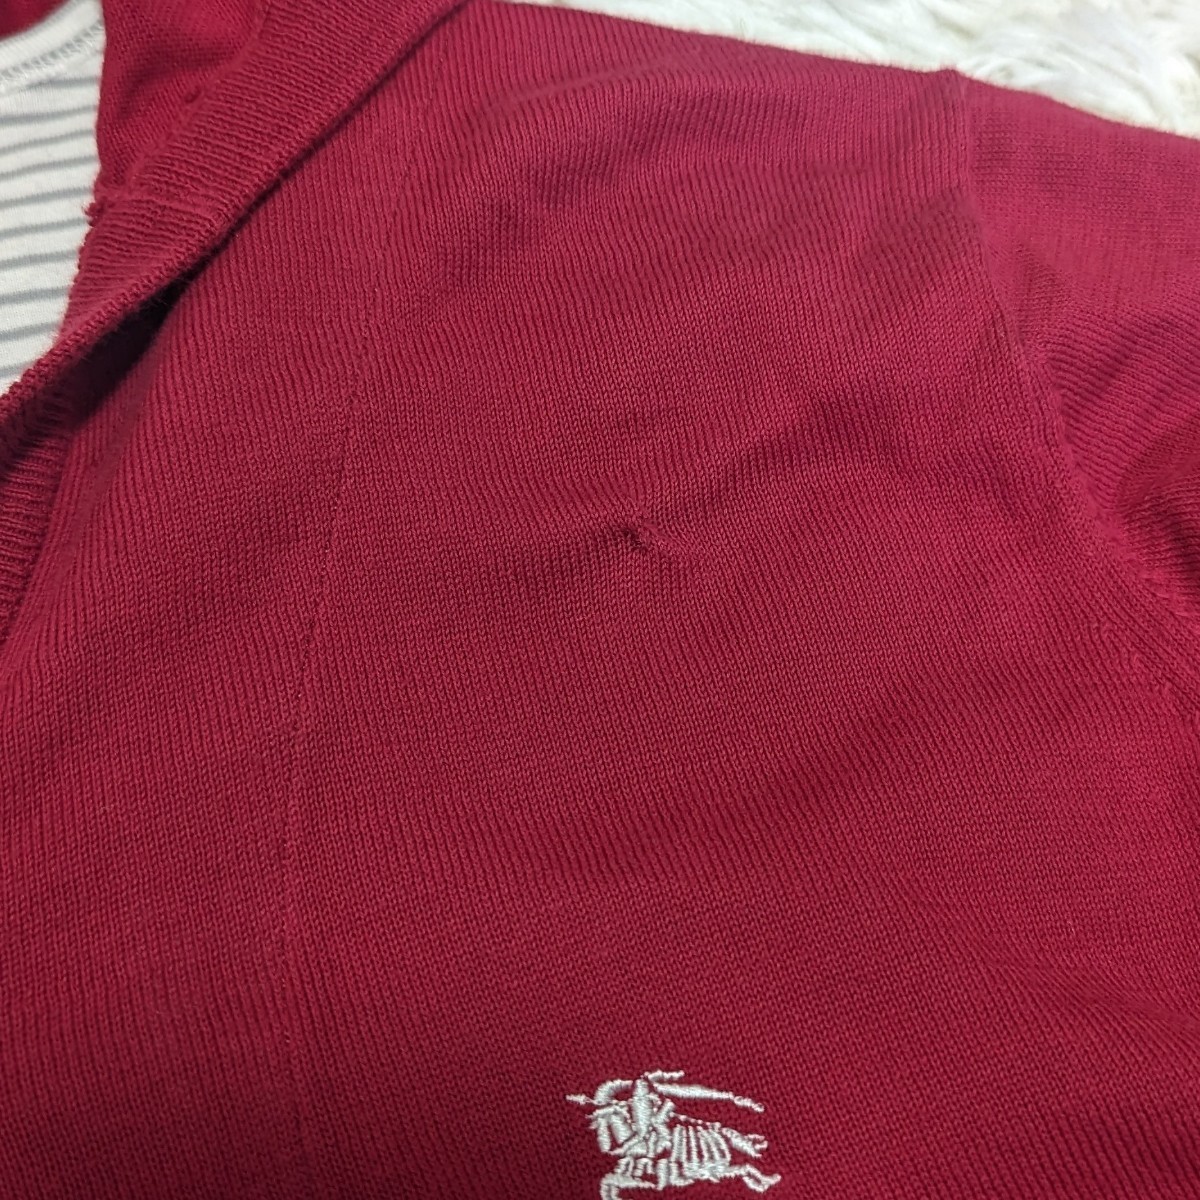 バーバリーブラックレーベル ニット パーカー カーディガン ホース刺繍 ロンT付き BURBERRY BLACK LABEL セーター ジャケット  トップス